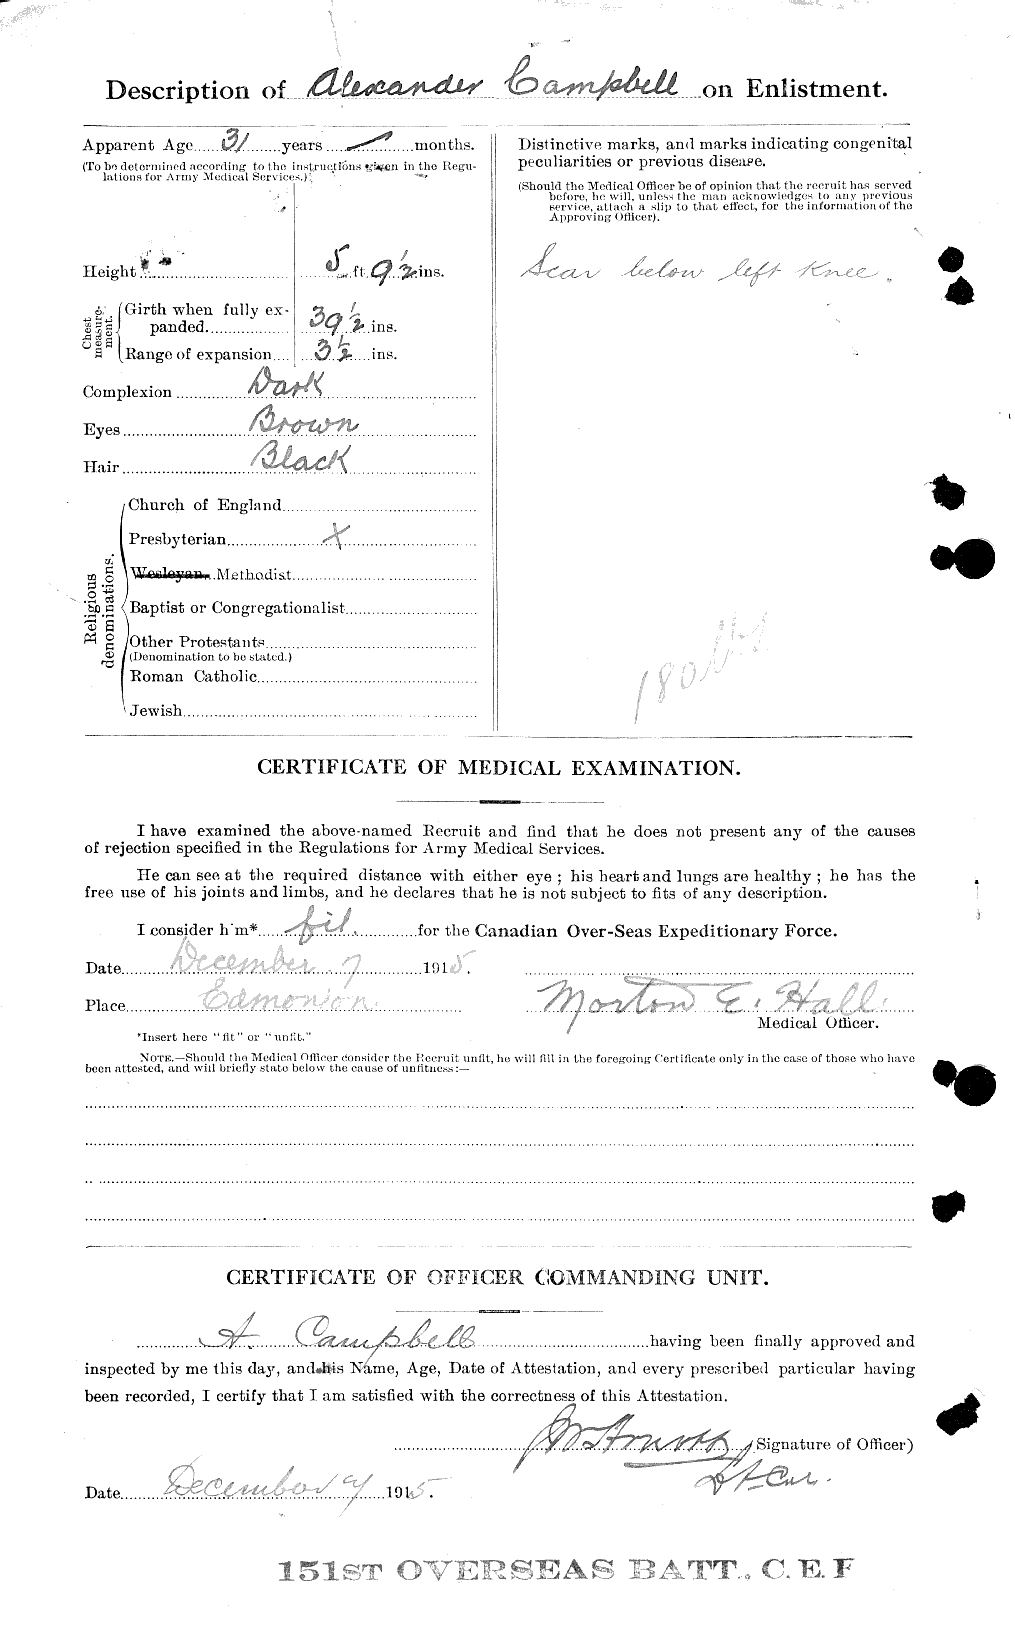 Dossiers du Personnel de la Première Guerre mondiale - CEC 004903b